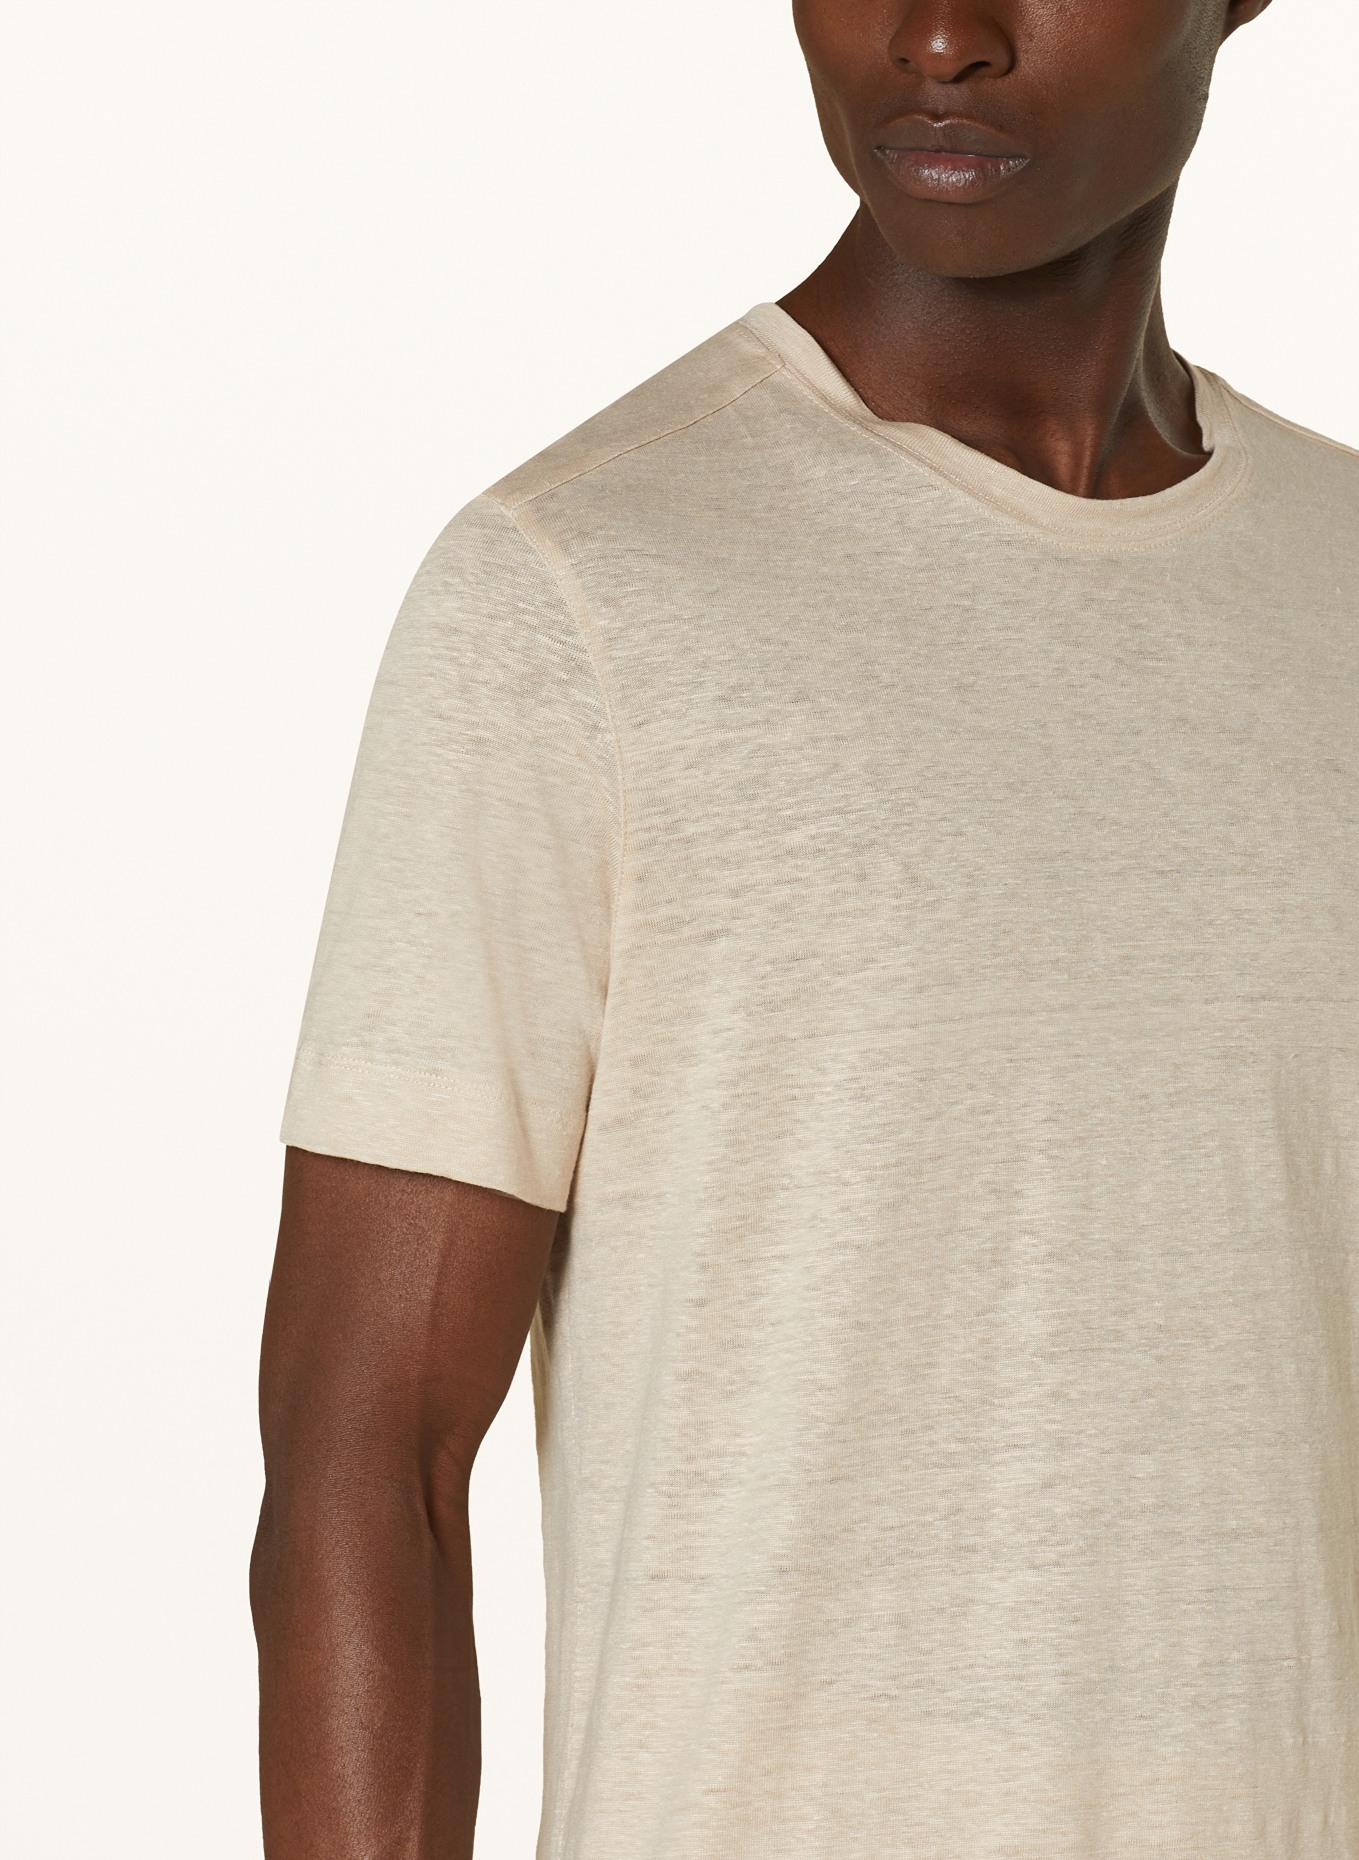 ZEGNA T-shirt made of linen, Color: BEIGE (Image 4)